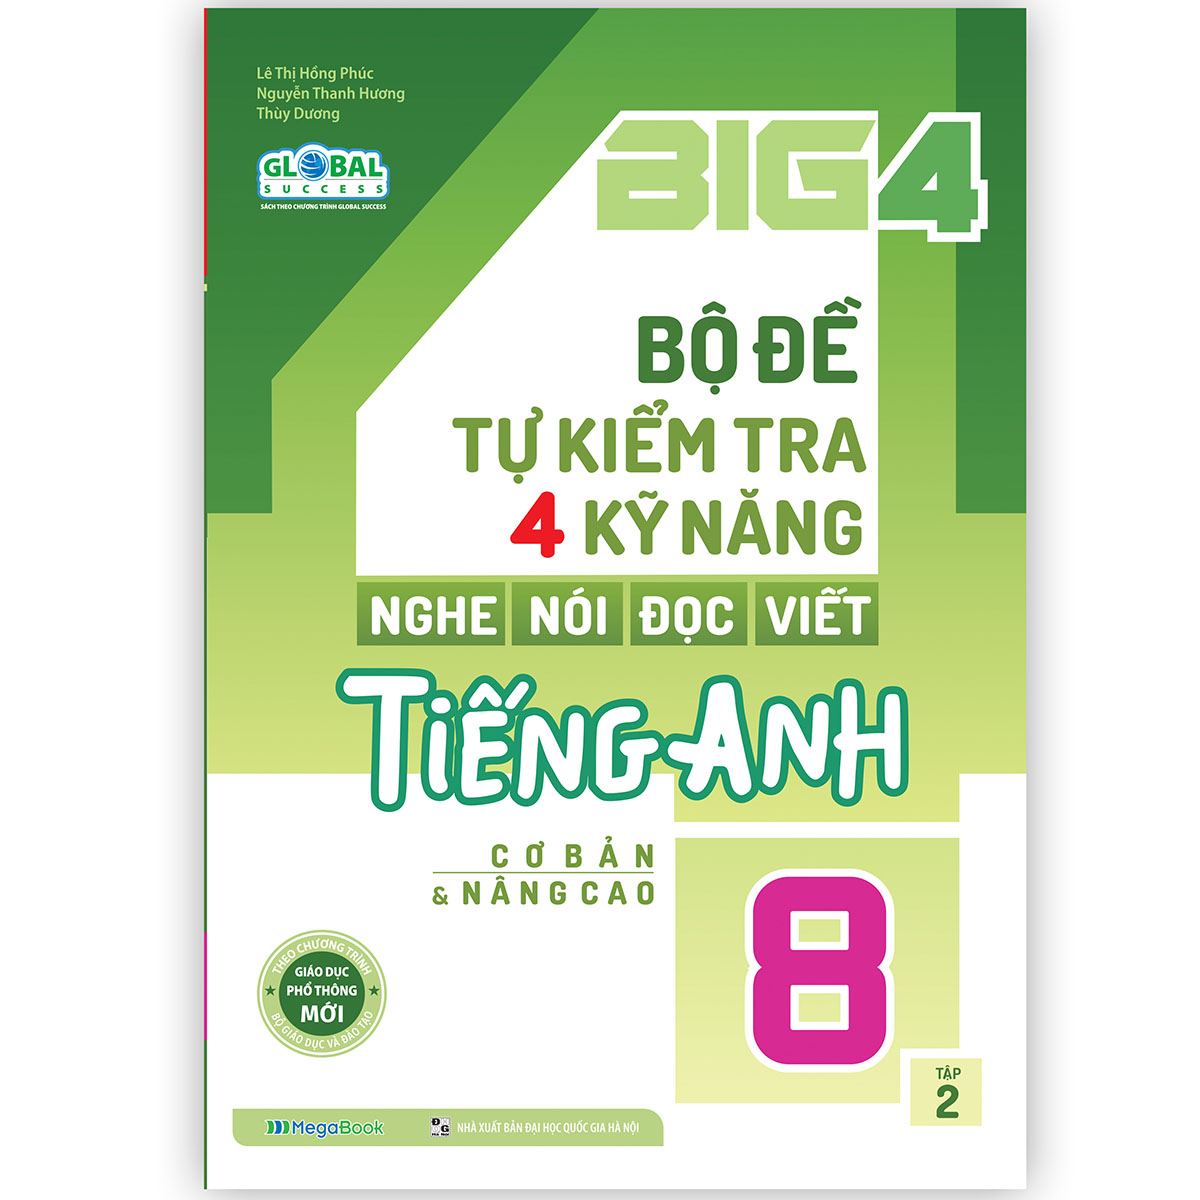 Big 4 bộ đề tự kiểm tra 4 kỹ năng Nghe - Nói - Đọc - Viết tiếng Anh (cơ bản và nâng cao) lớp 8 tập 2 (Global)